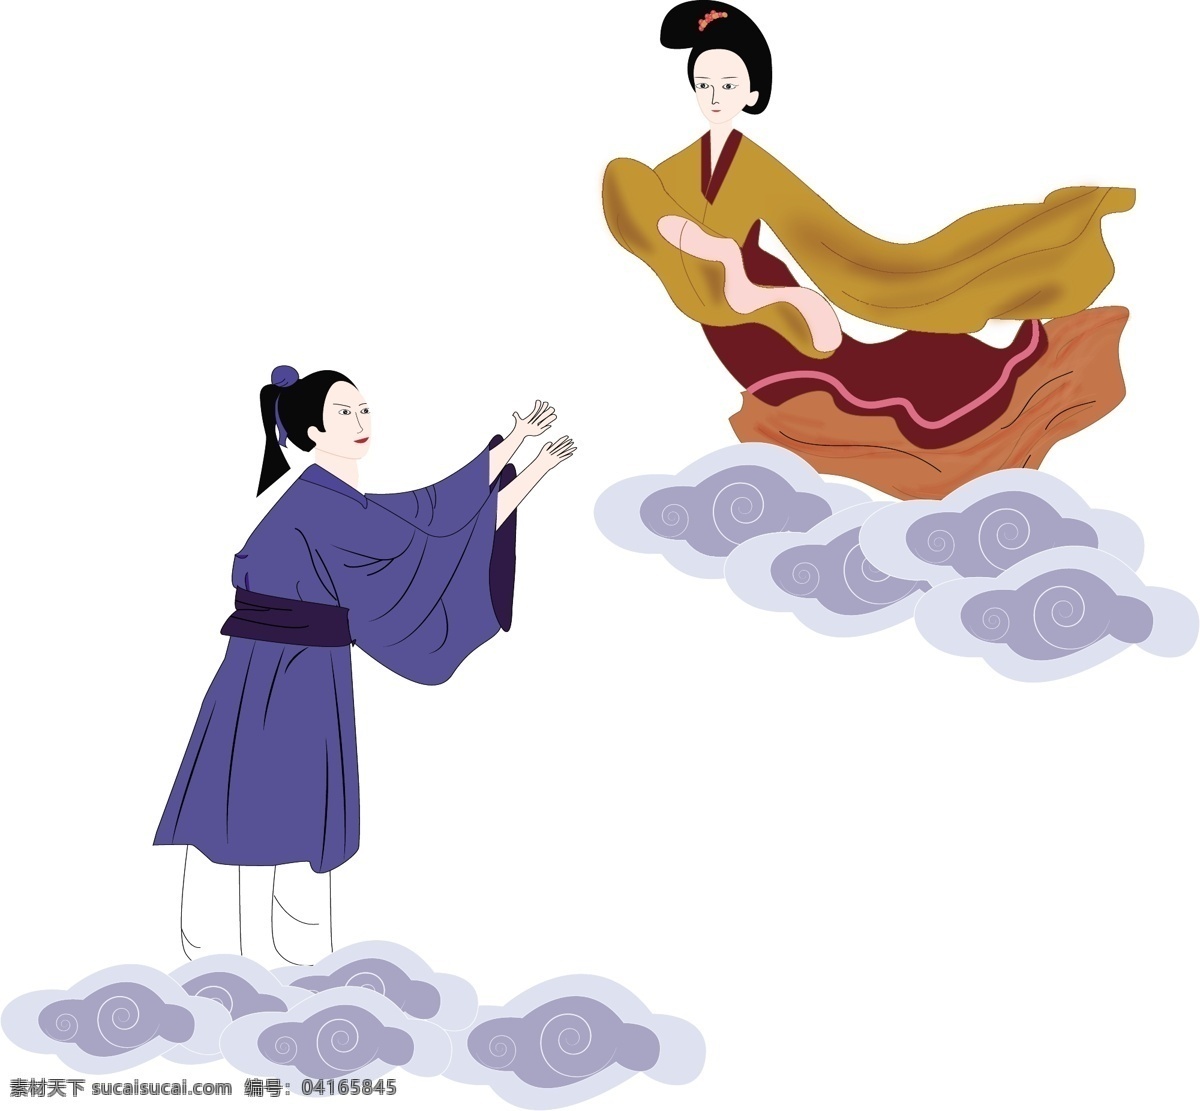 七夕 情人节 中国 风 牛郎织女 古装 男女 矢量 女 浪漫 传统 故事 牛郎 织女